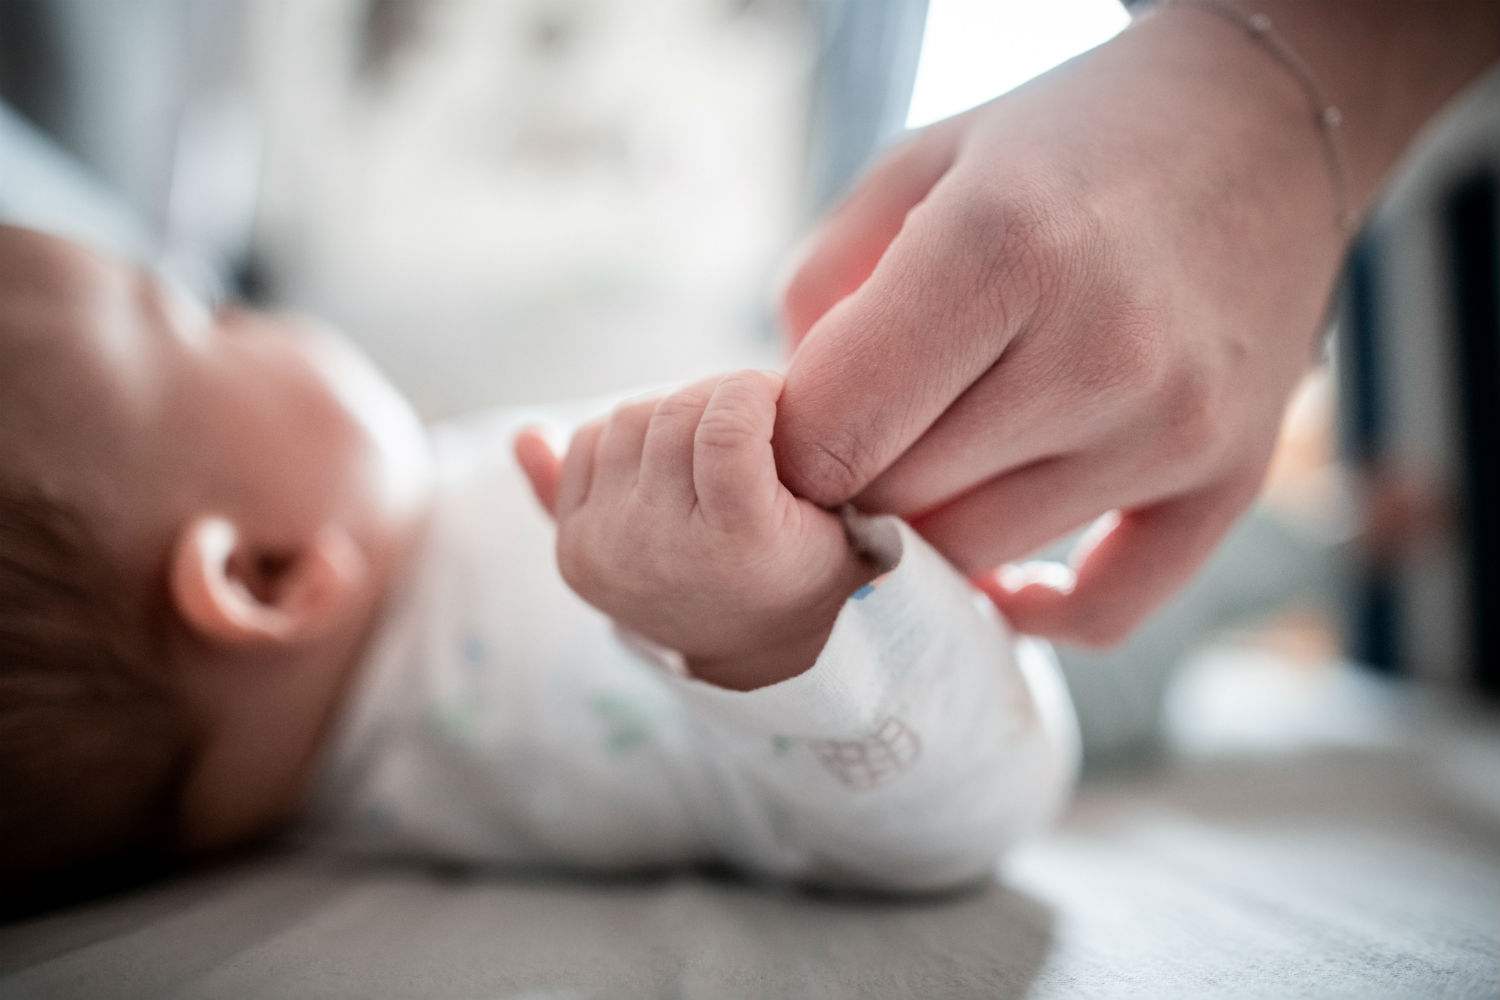 shqiperia e dyta ne europe per normat me te larta te vdekshmerise foshnjore shkak mungesa e mjekeve mjekeve neonatale